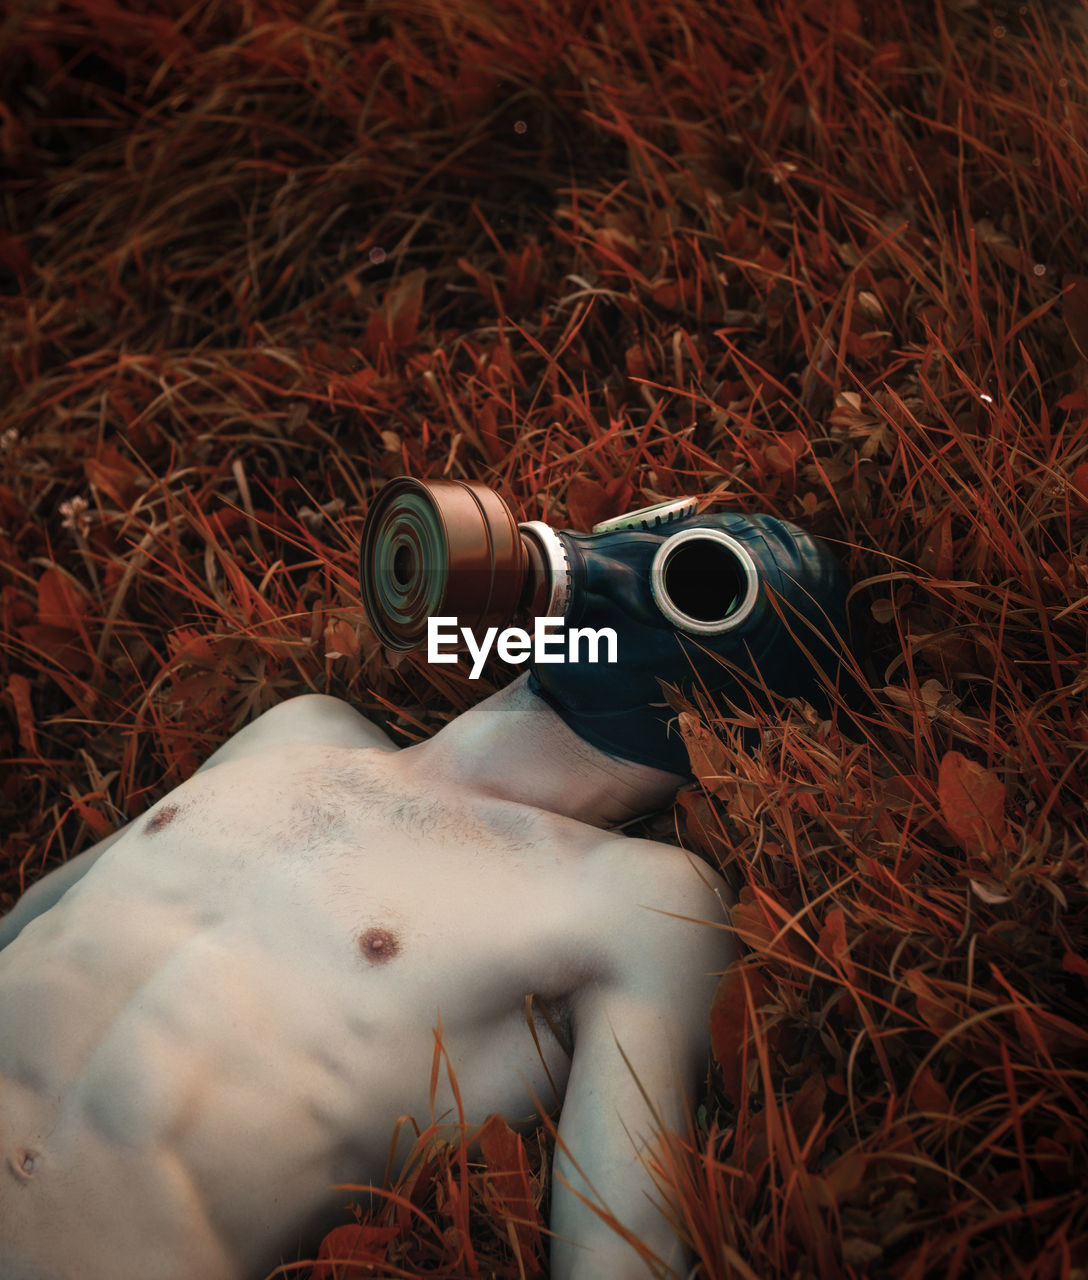 Shirtless man wearing gas mask while lying on grassy land